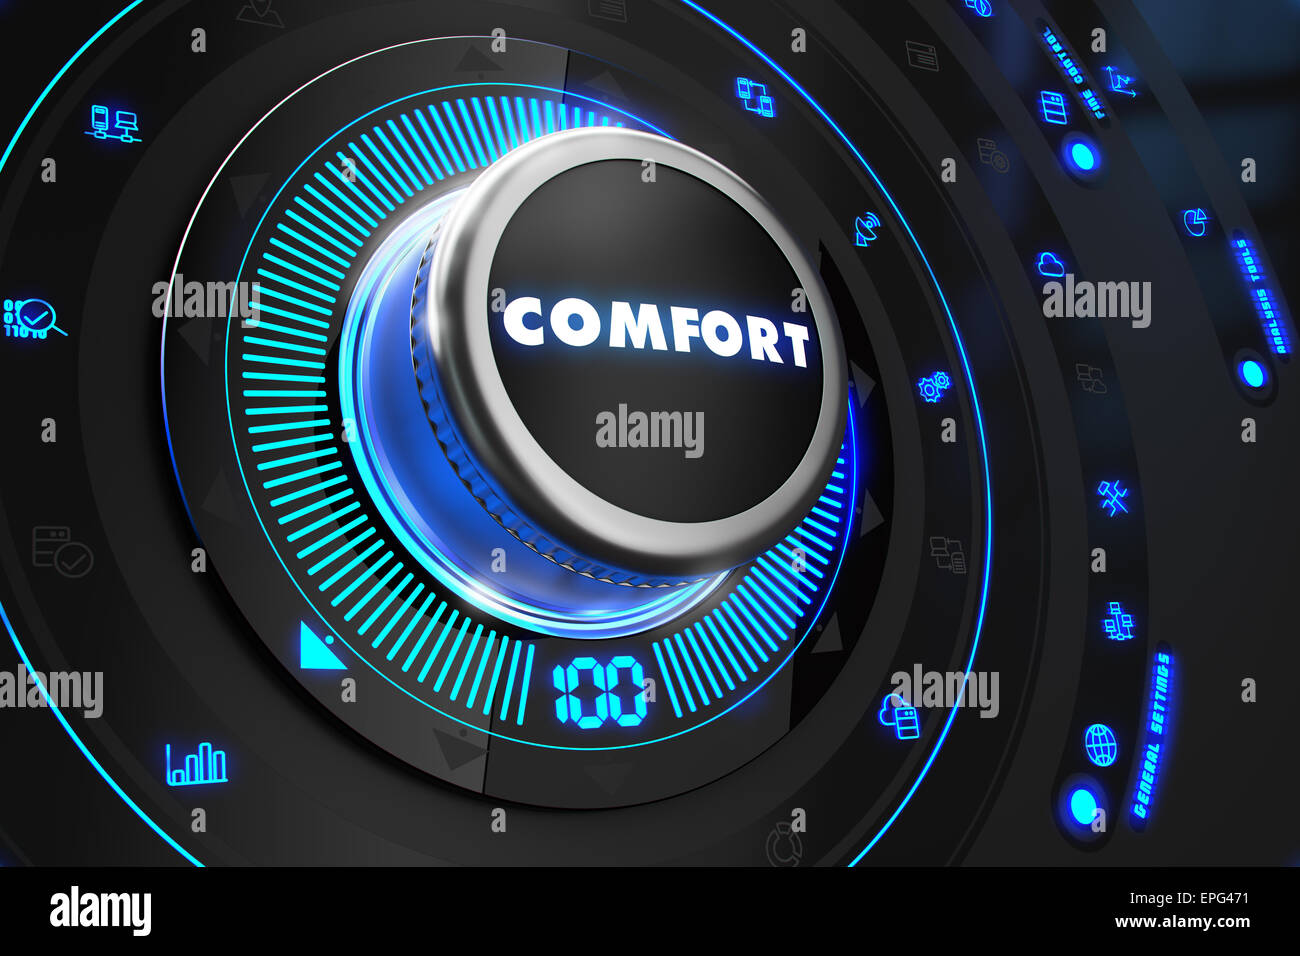 Régulateur de confort sur la console de commande noir avec rétroéclairage bleu. L'amélioration, la réglementation, le contrôle de gestion ou concept. Banque D'Images